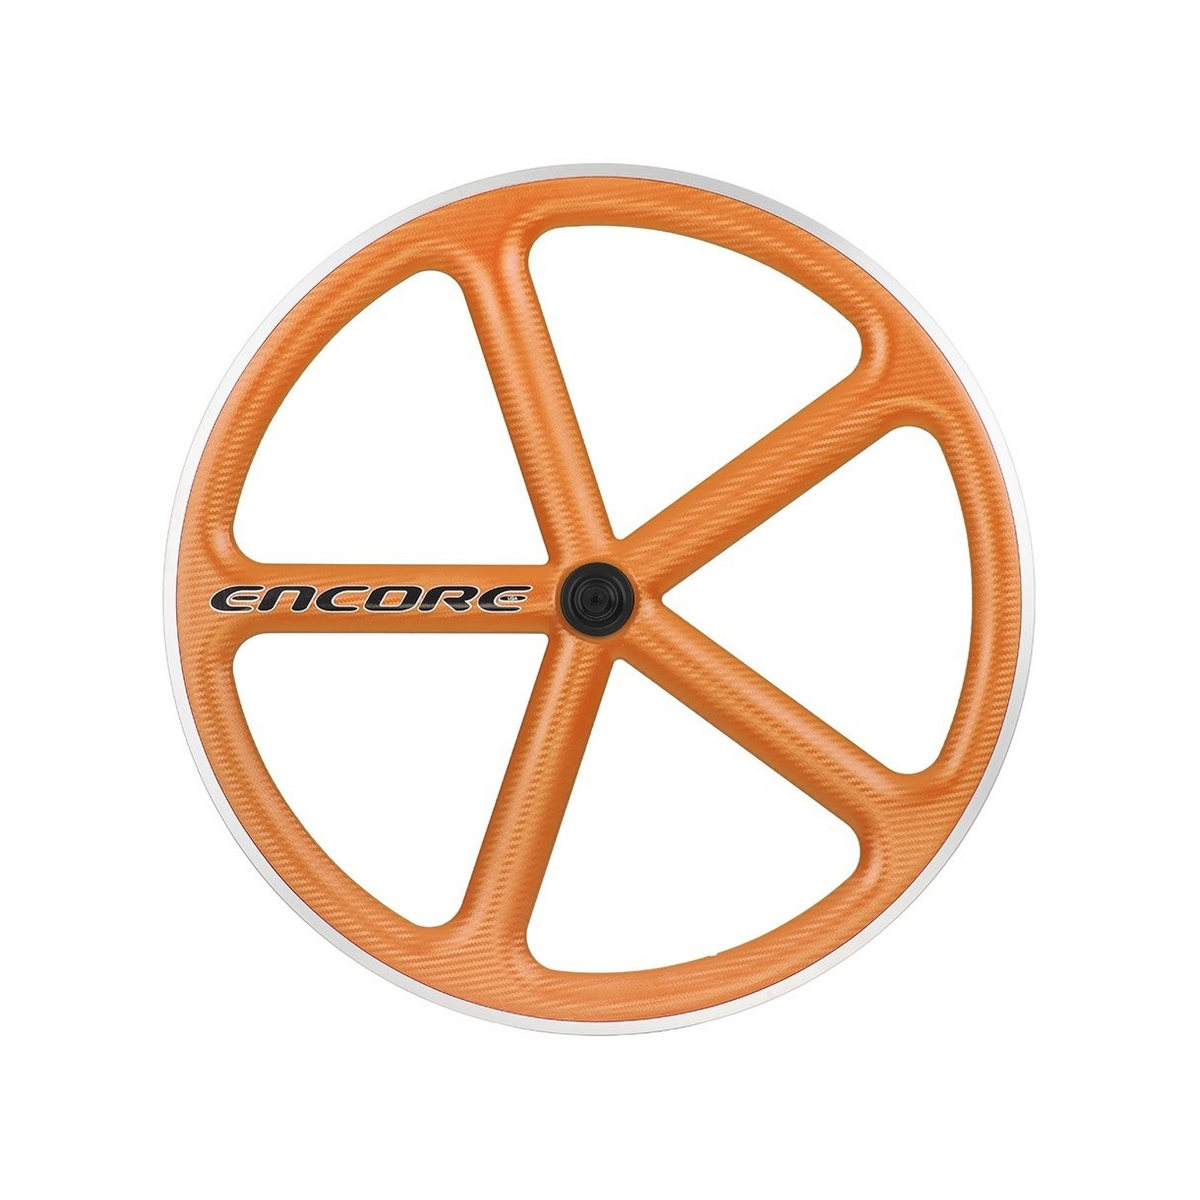 Hinterrad 700c Track 5 Speichen Carbon Geflecht orange msw